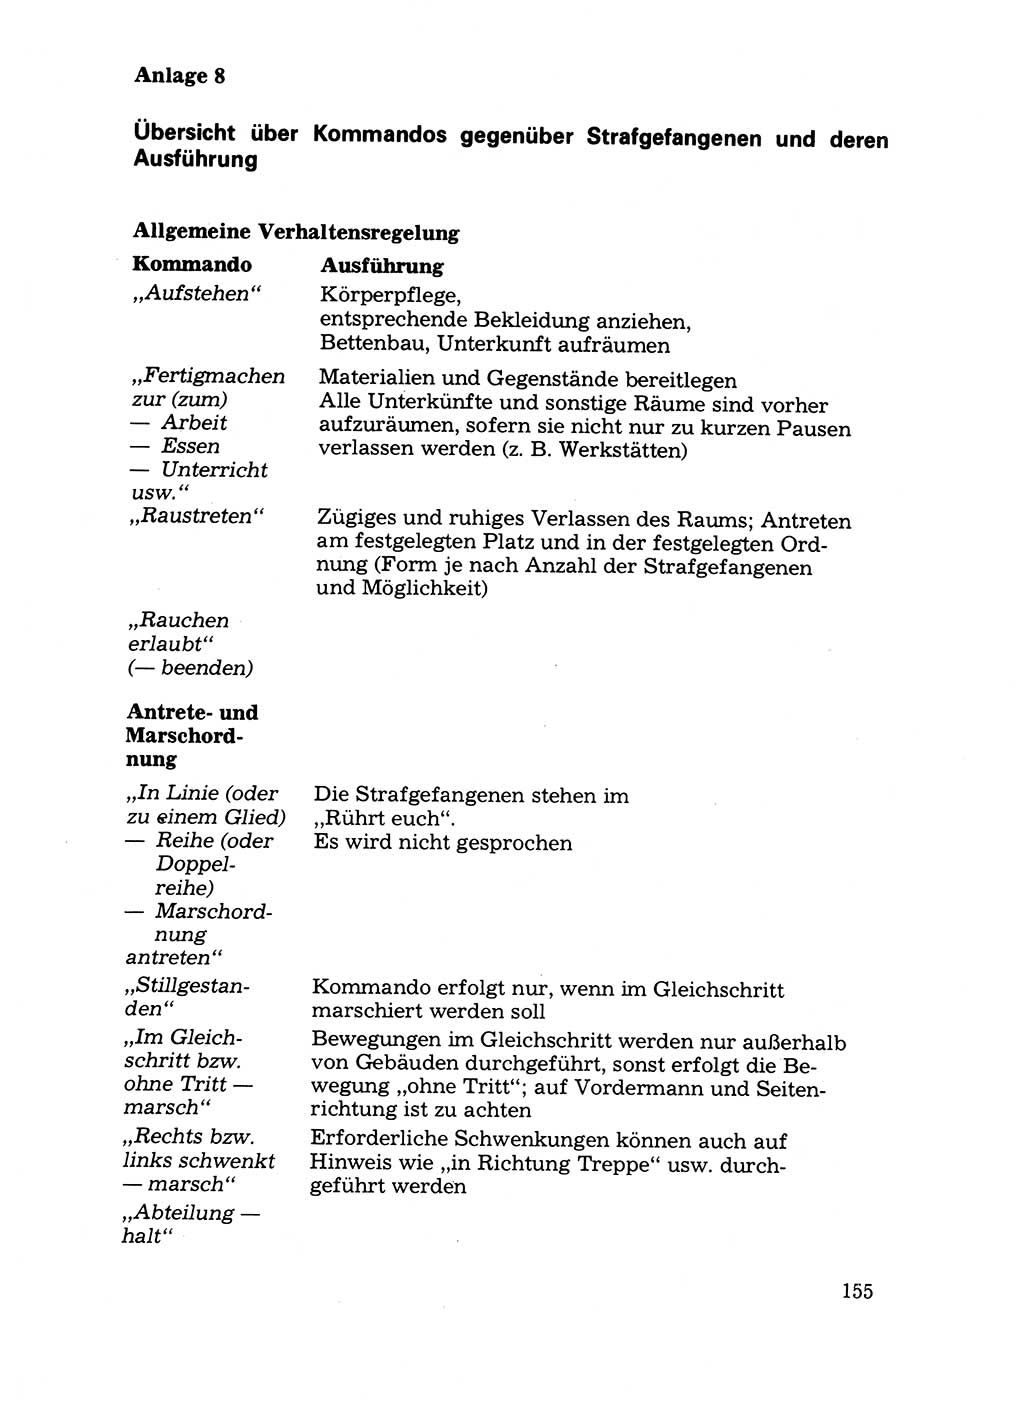 Handbuch für operative Dienste, Abteilung Strafvollzug (SV) [Ministerium des Innern (MdI) Deutsche Demokratische Republik (DDR)] 1981, Seite 155 (Hb. op. D. Abt. SV MdI DDR 1981, S. 155)